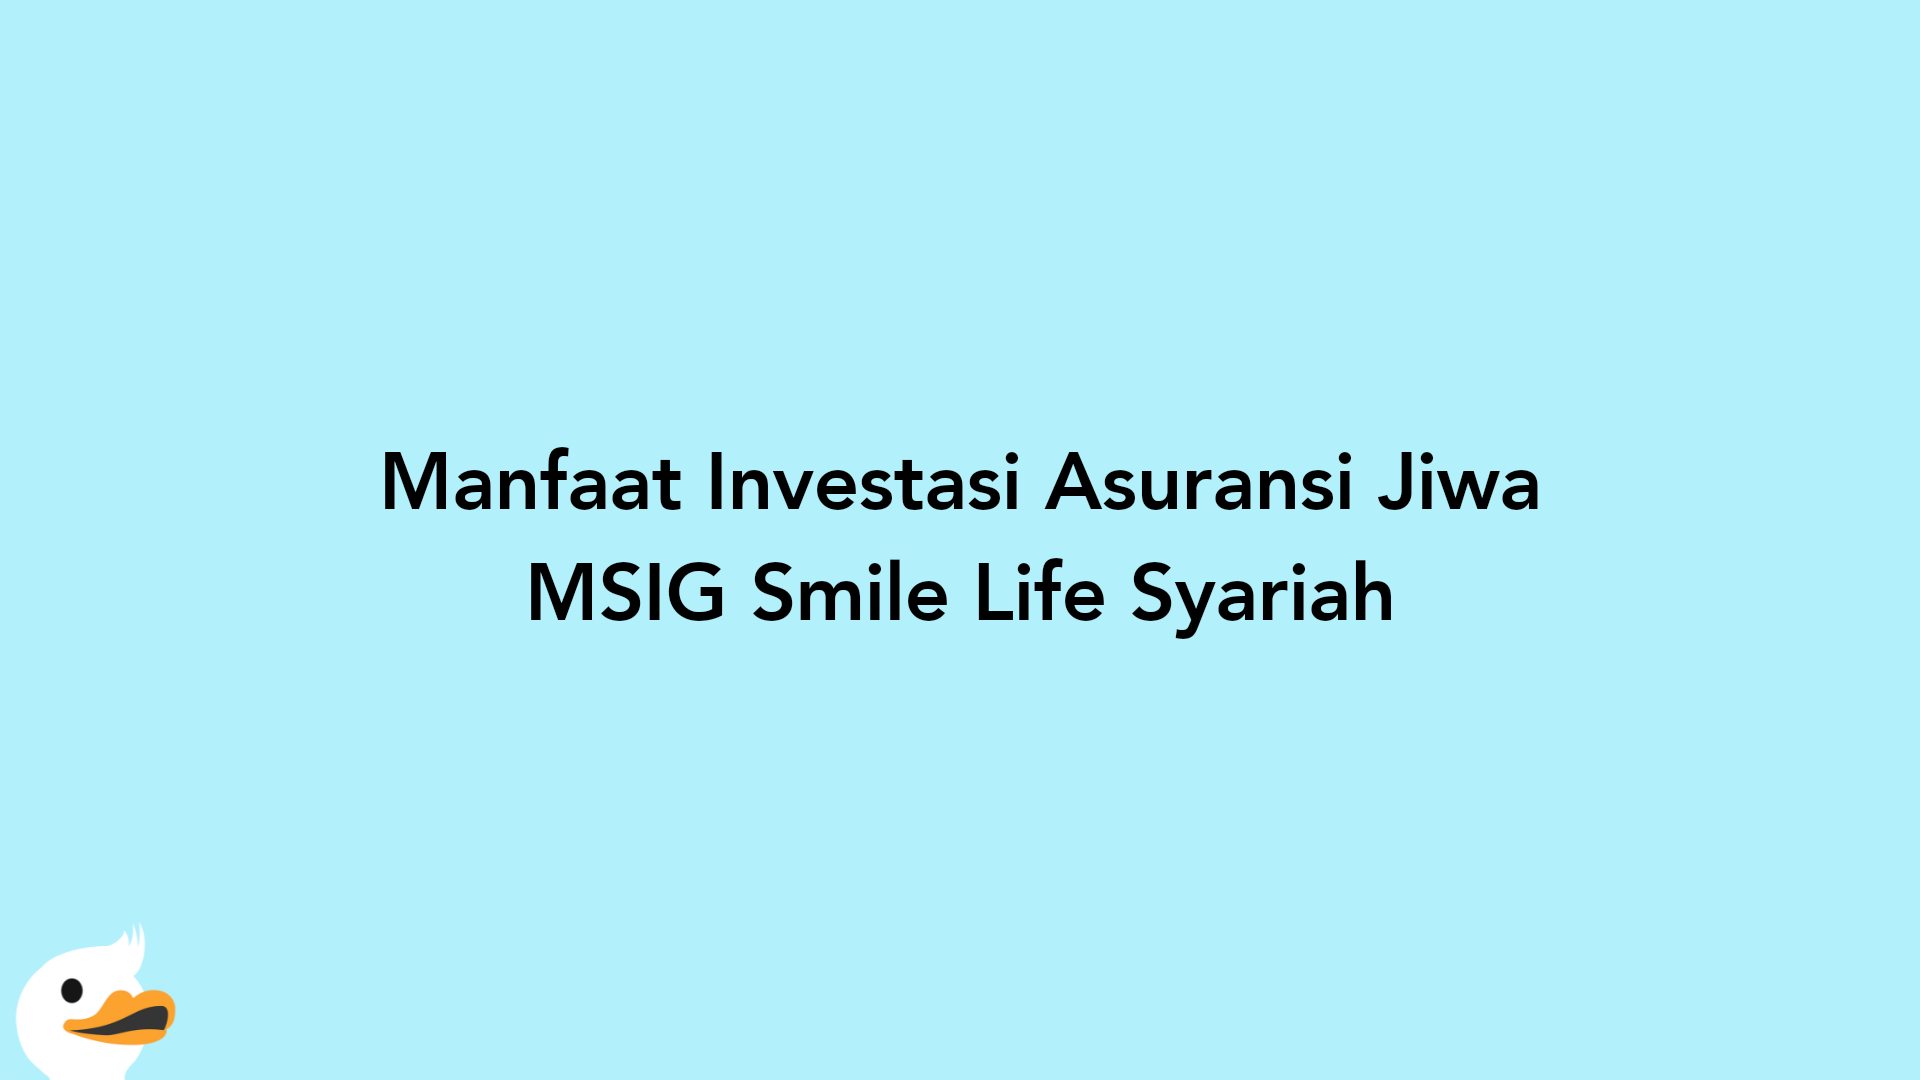 Manfaat Investasi Asuransi Jiwa MSIG Smile Life Syariah